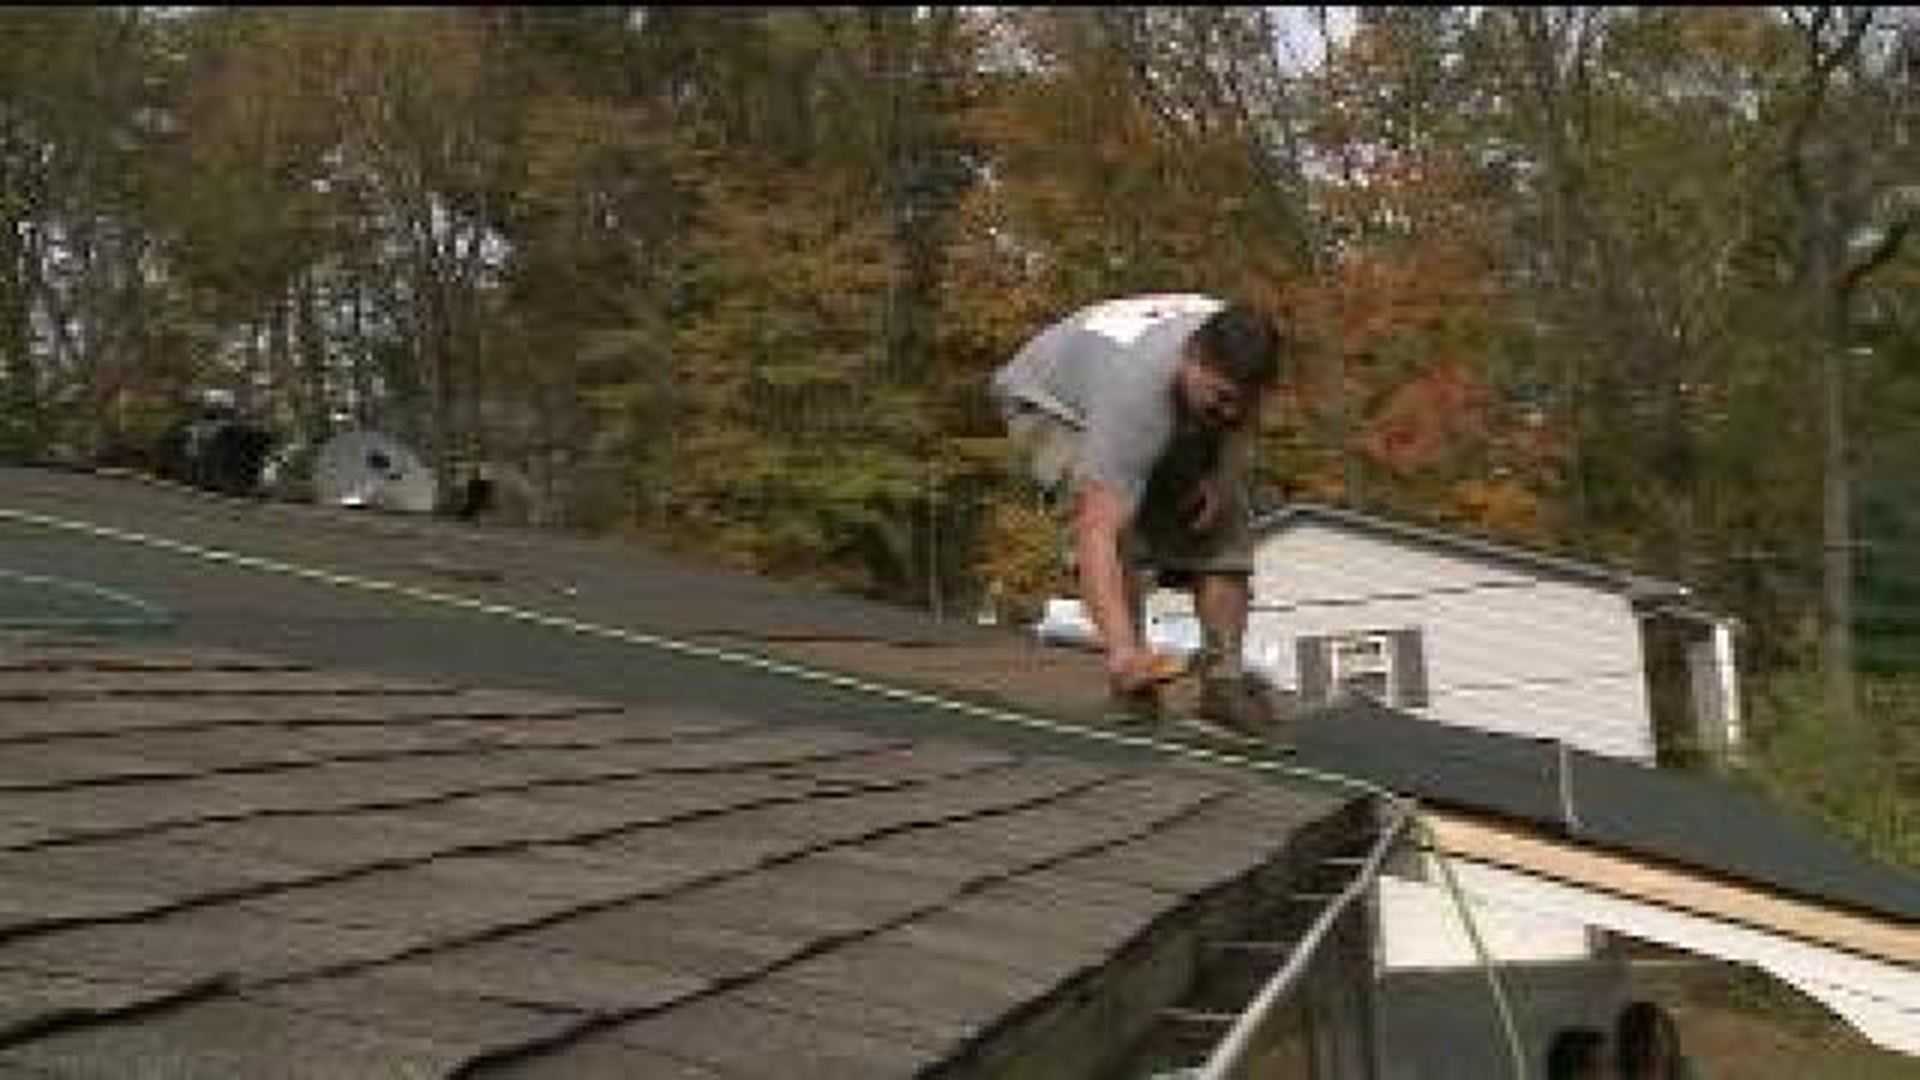 Volunteers Repair Roof For Senior in Need